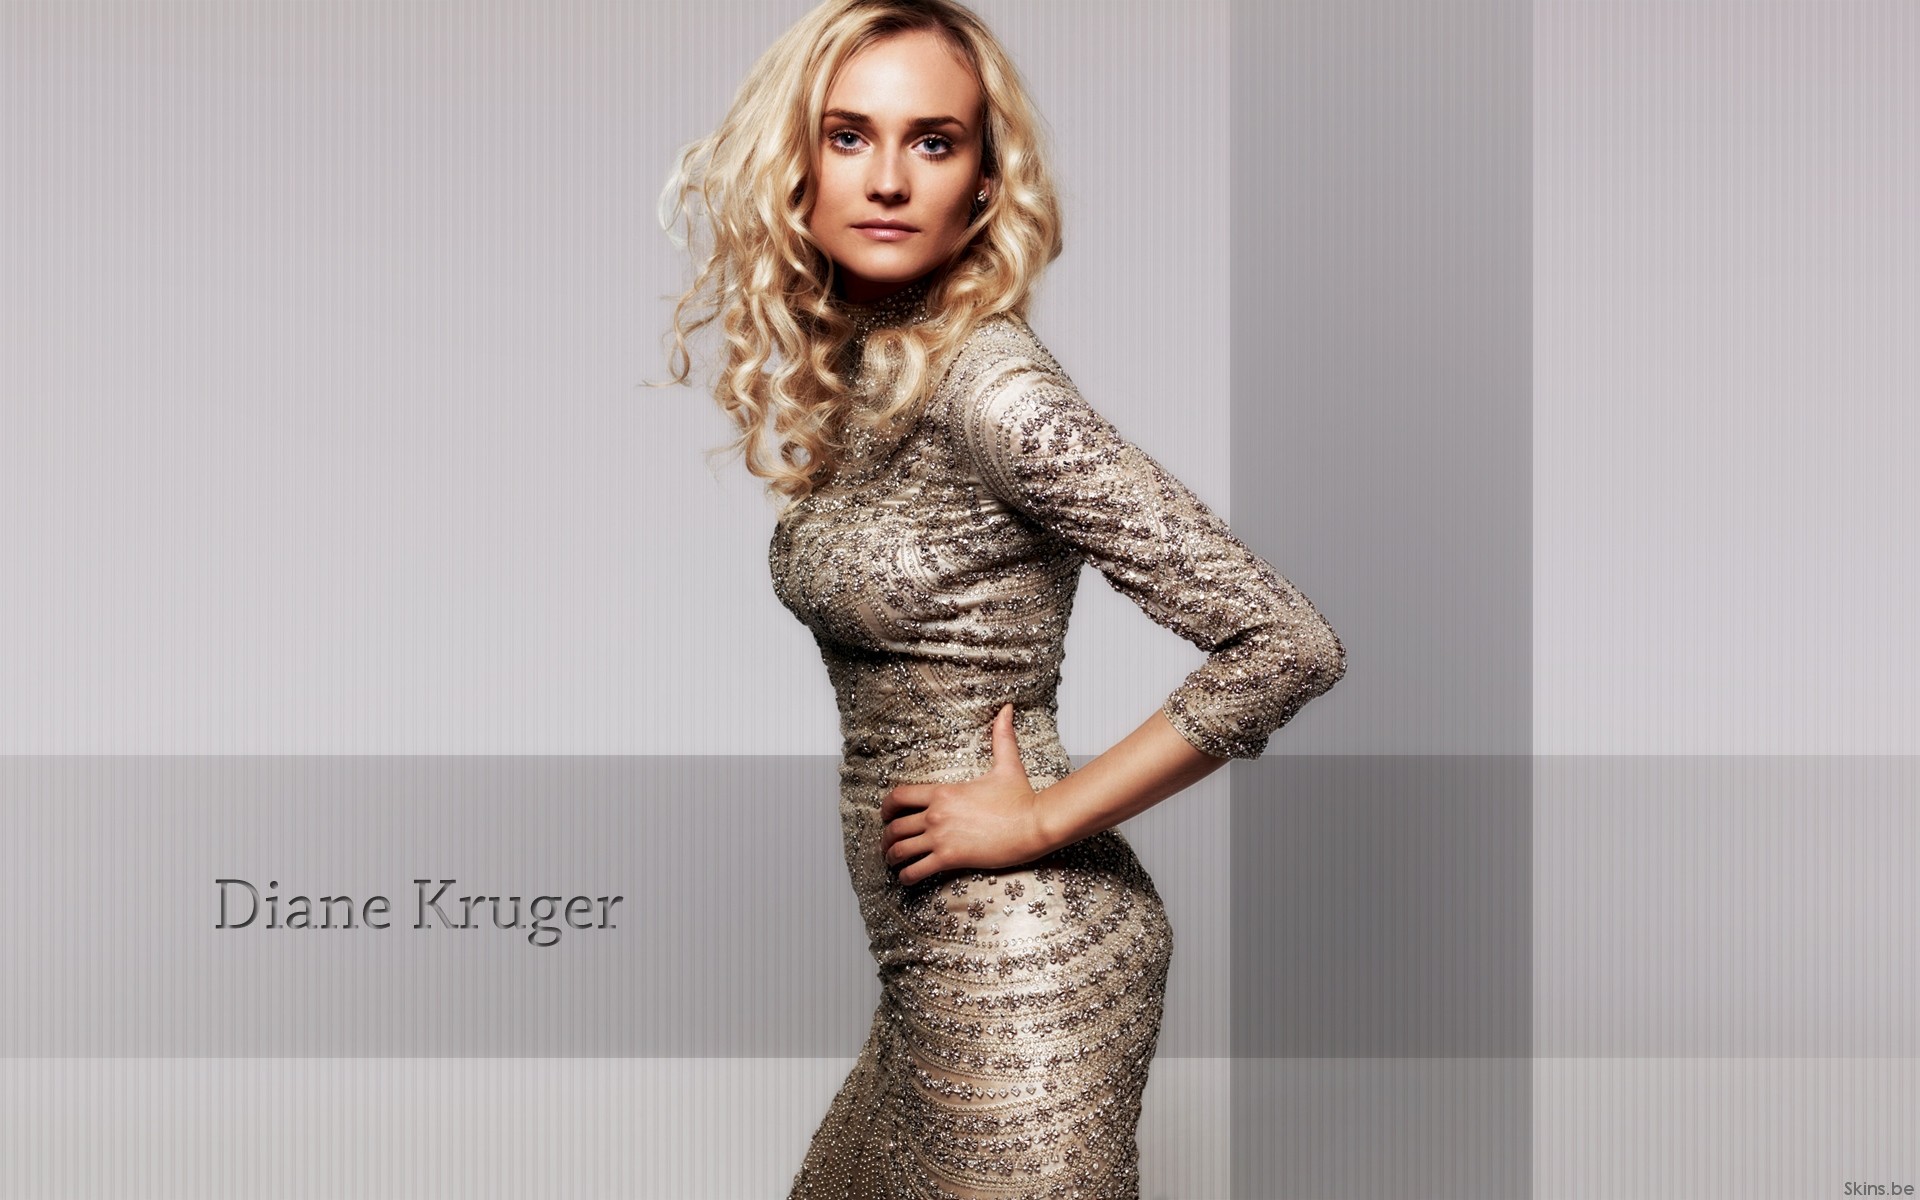 Download mobile wallpaper Celebrity, Diane Kruger for free.